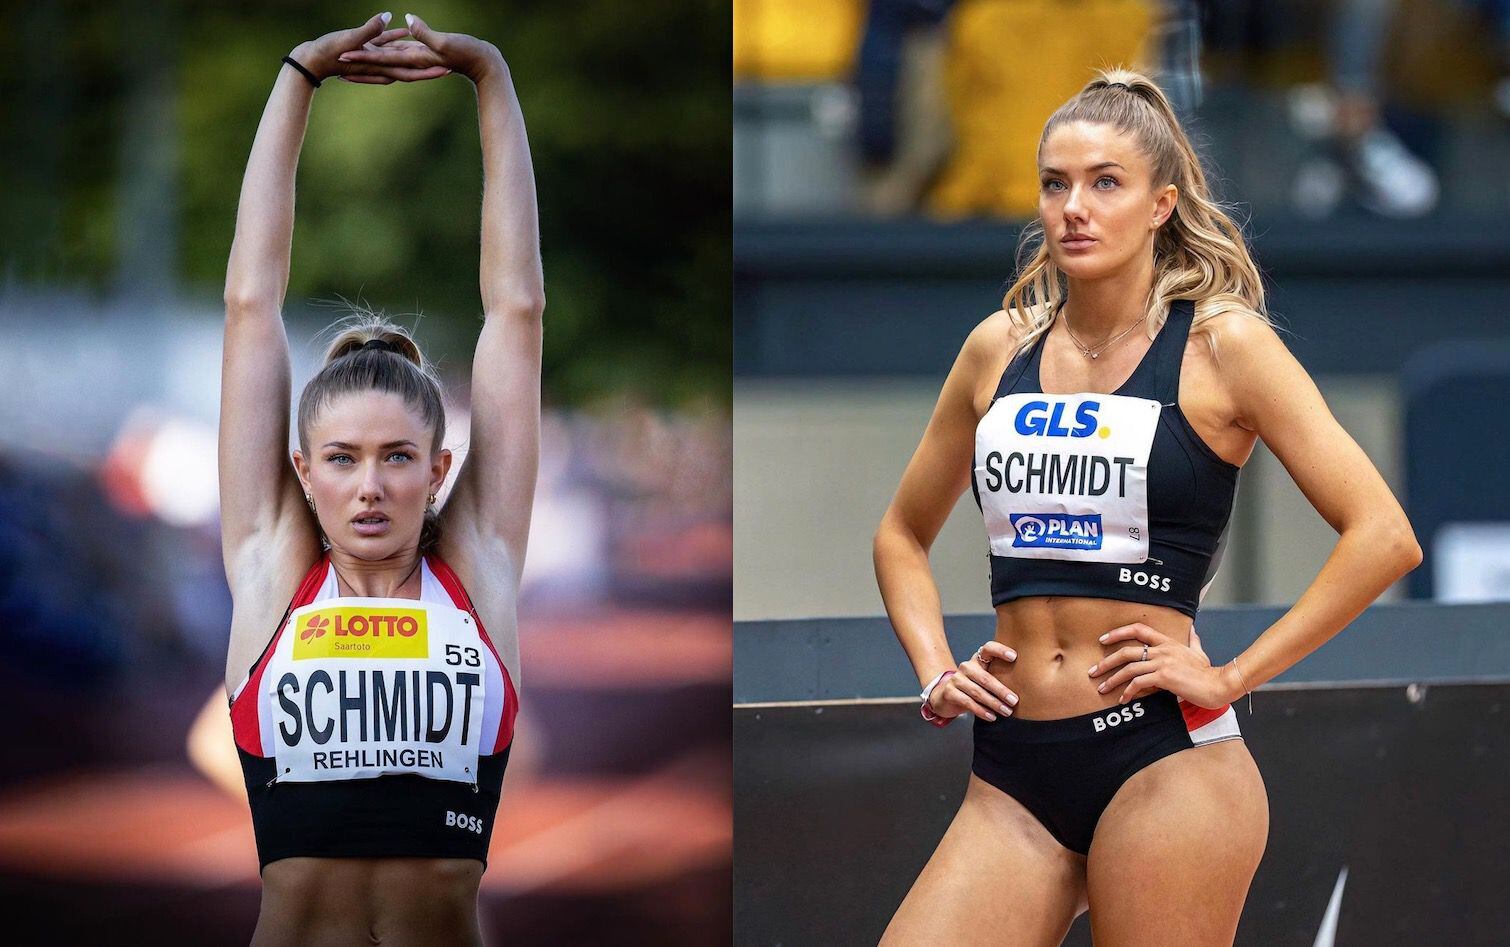 alica schmidt, la atleta “más sexy del mundo”, clasifica a los juegos olímpicos